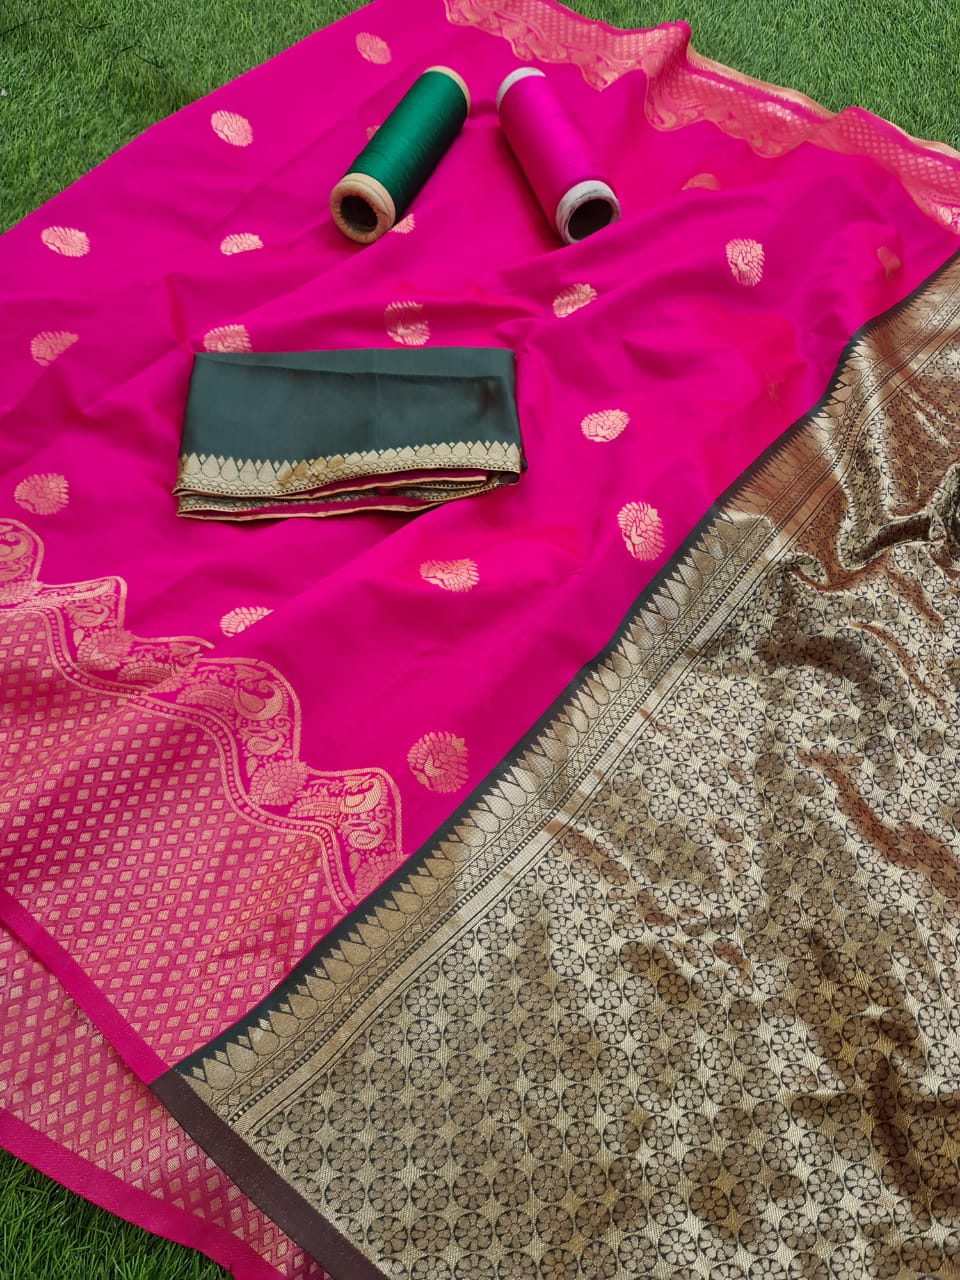 Outstanding Pink And Green Banarasi Saree